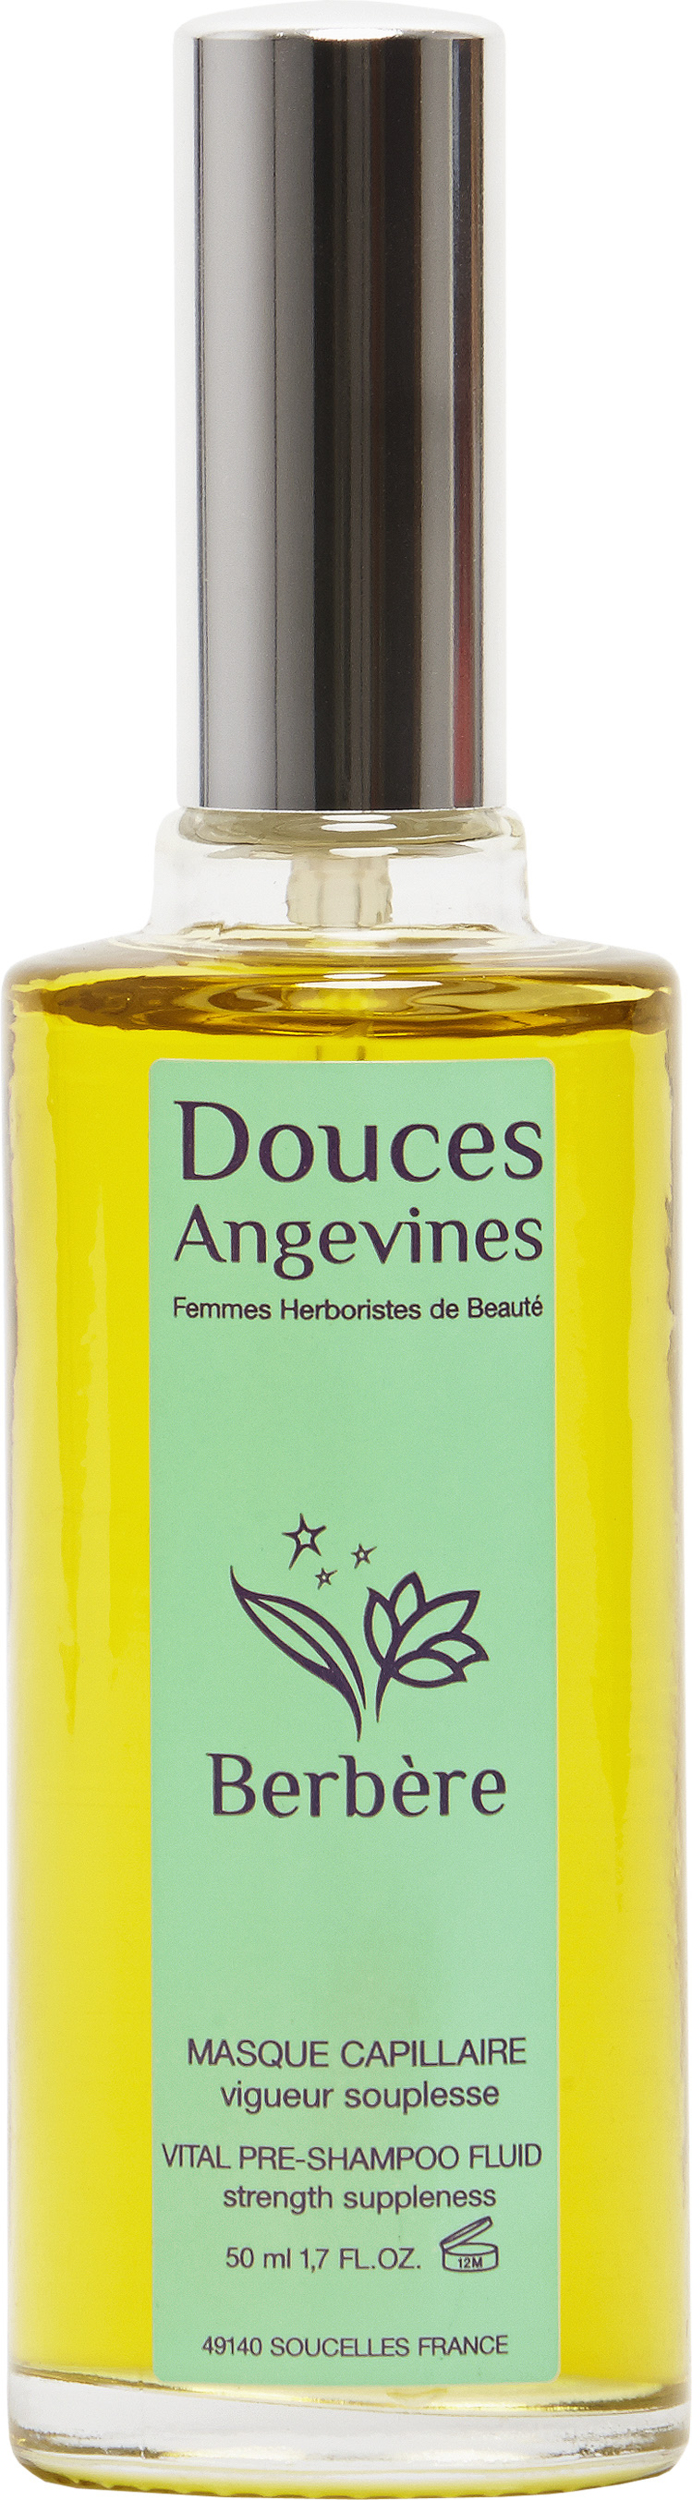 Doux Good - Douces Angevines - Berbère fluide avant shampoing pour la vitalité des cheveux